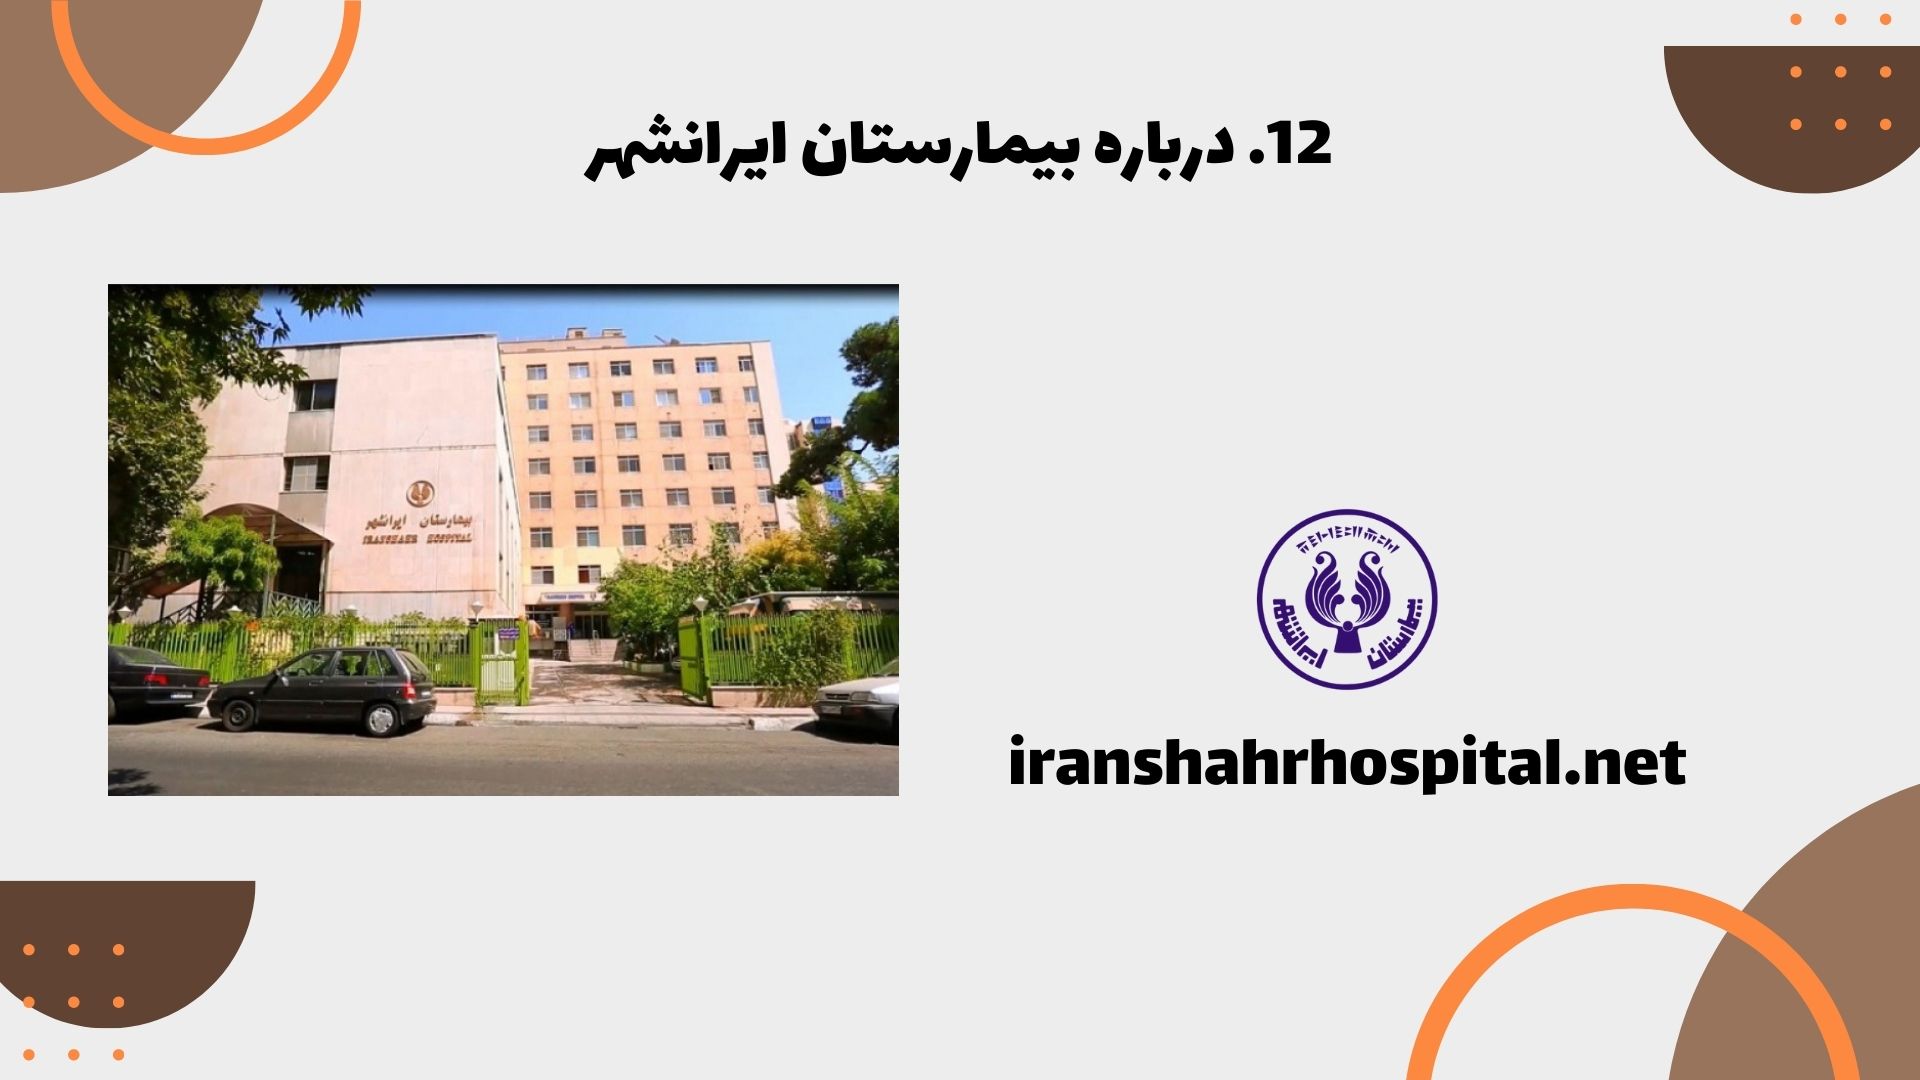 درباره بیمارستان ایرانشهر